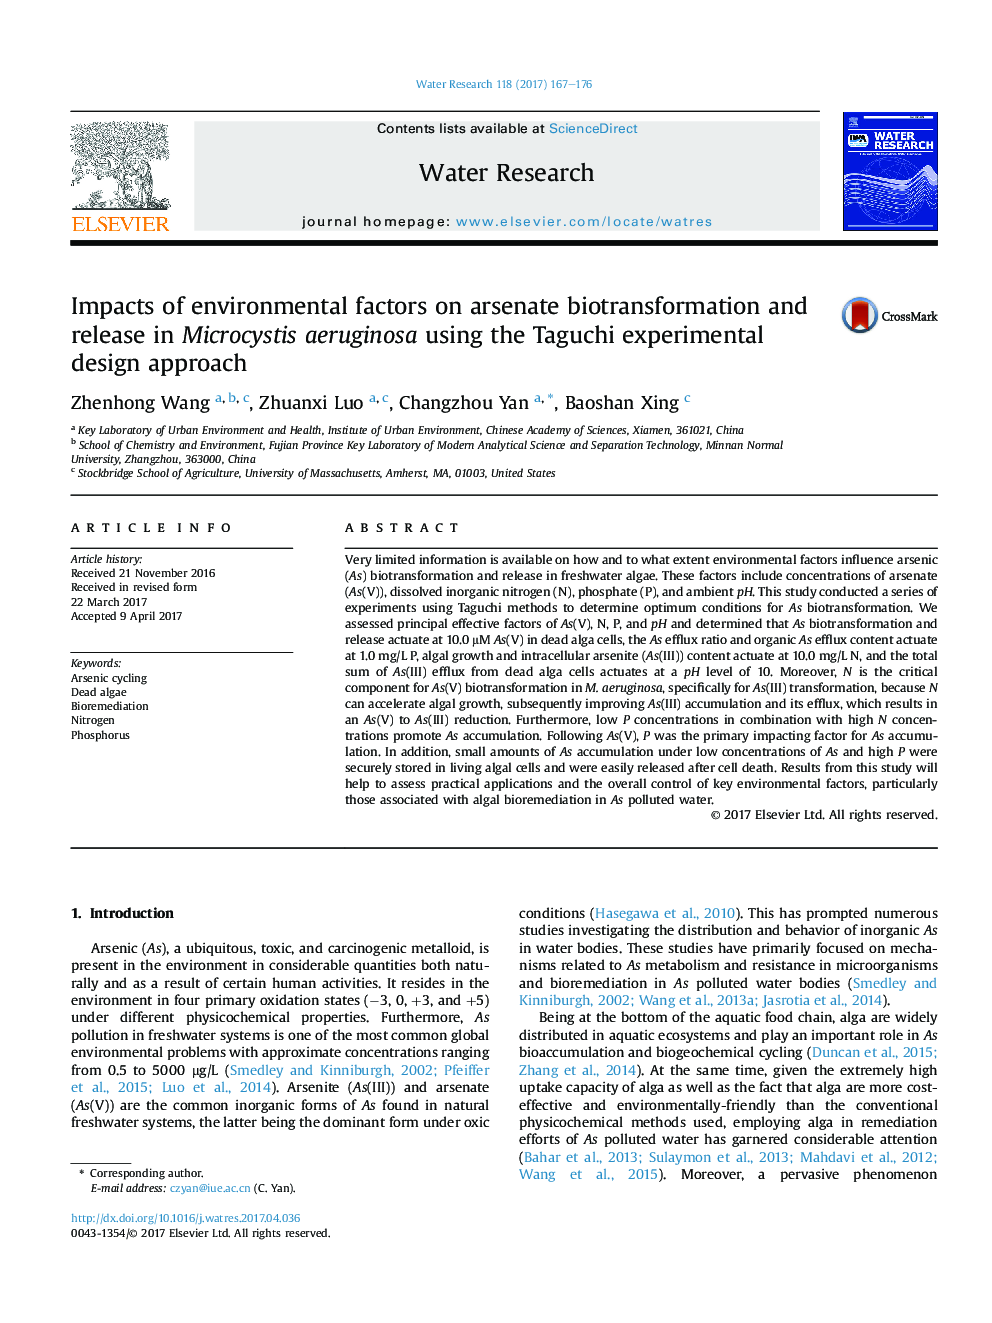 تأثیر عوامل محیطی بر تبدیل بیوتکنولوژی آرسنات و انتشار آن در میکروسیستیس آئروژینوزا با استفاده از روش طراحی تجربی تاگوچی 